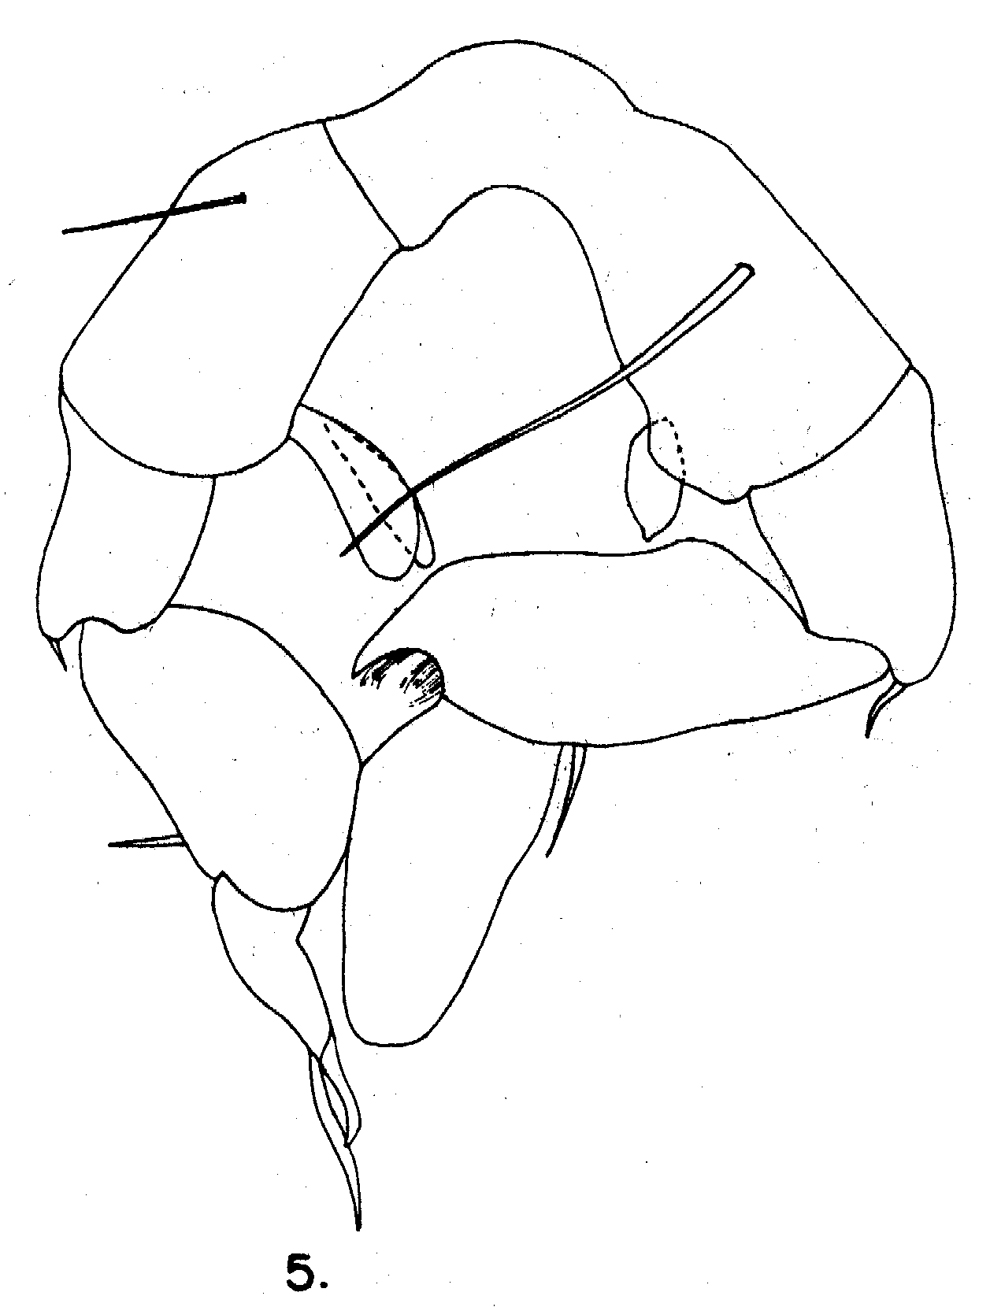 Espce Arietellus giesbrechti - Planche 3 de figures morphologiques